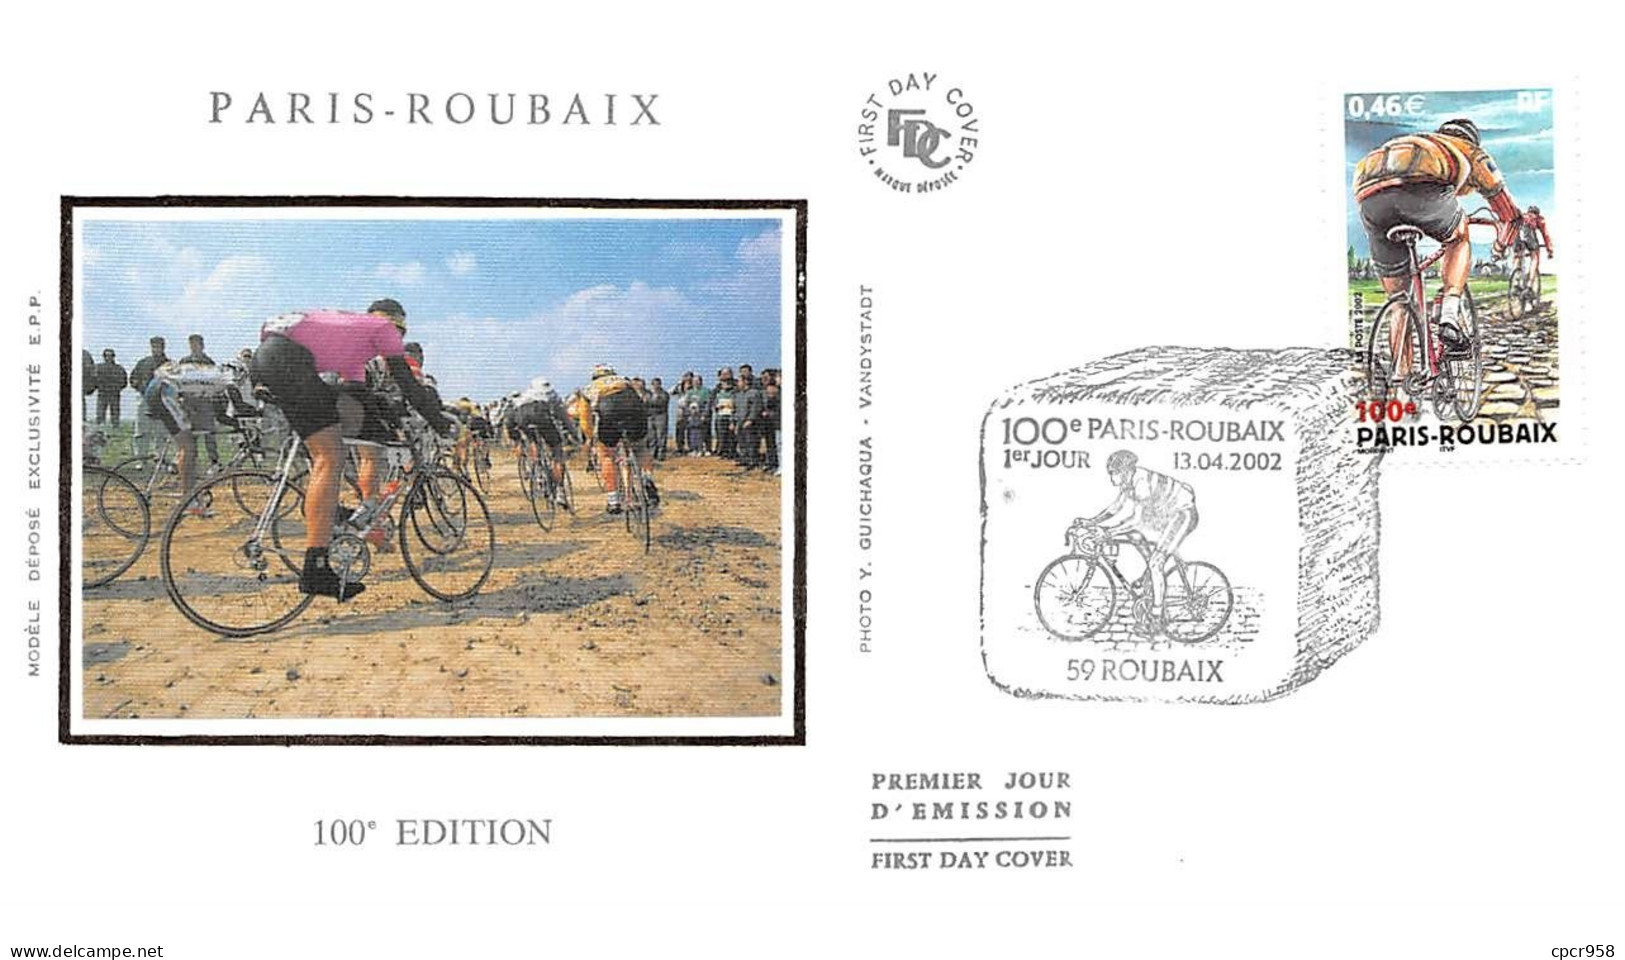 FRANCE.FDC.AM11764.13/04/2002.Cachet Roubaix.Paris-Roubaix.100e Edition - 2000-2009